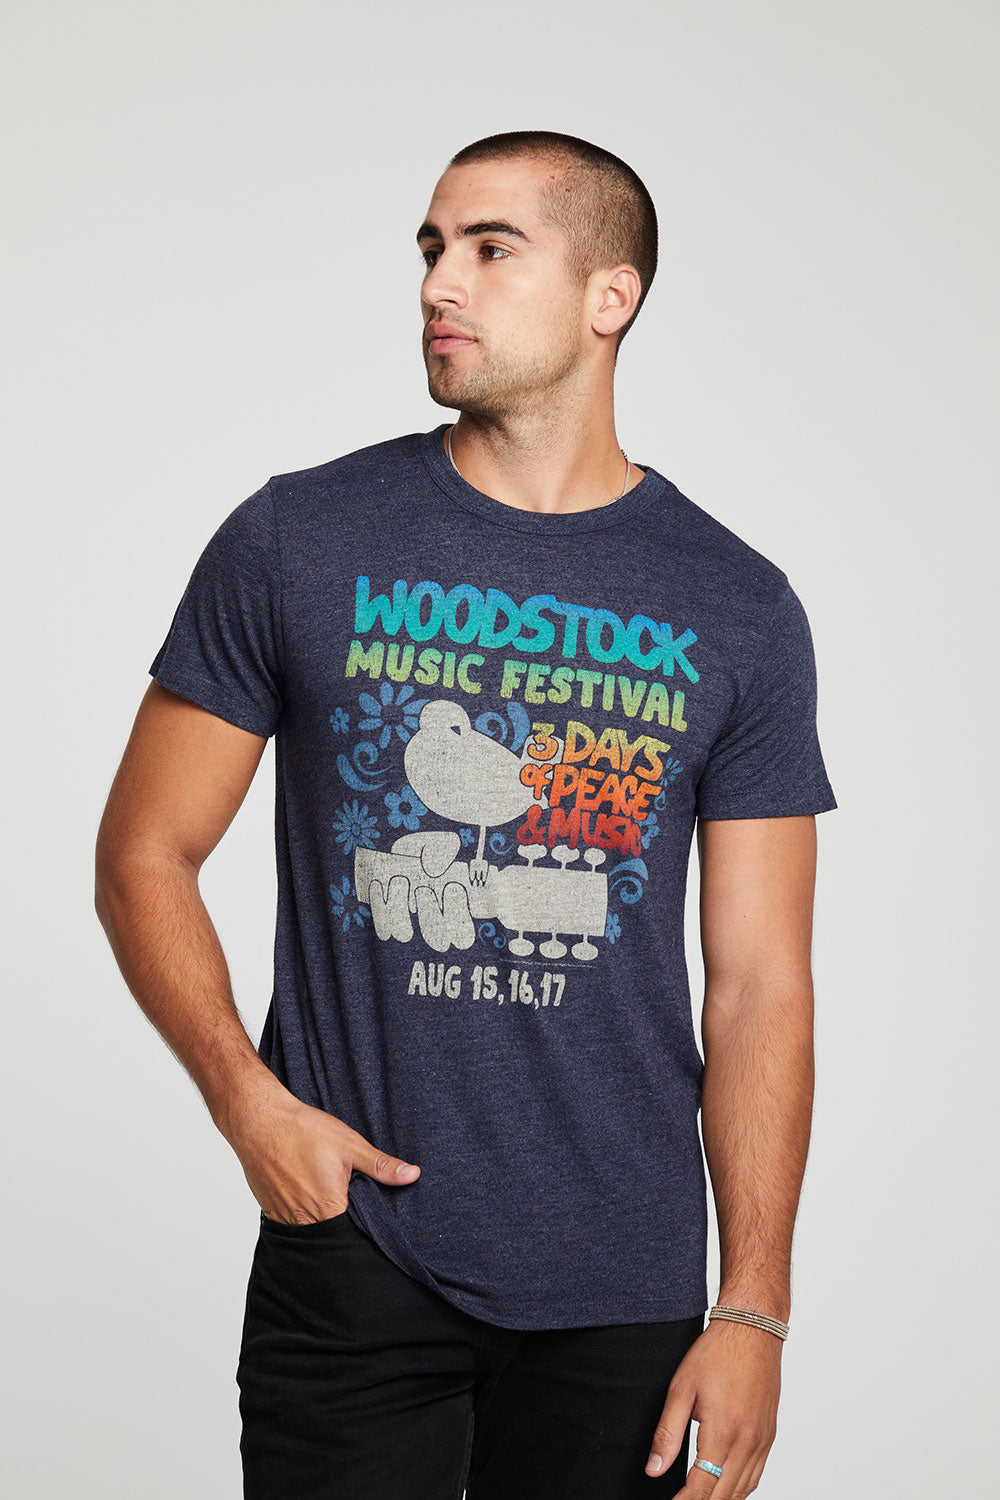 Woodstock Music Festival MENS chaserbrand